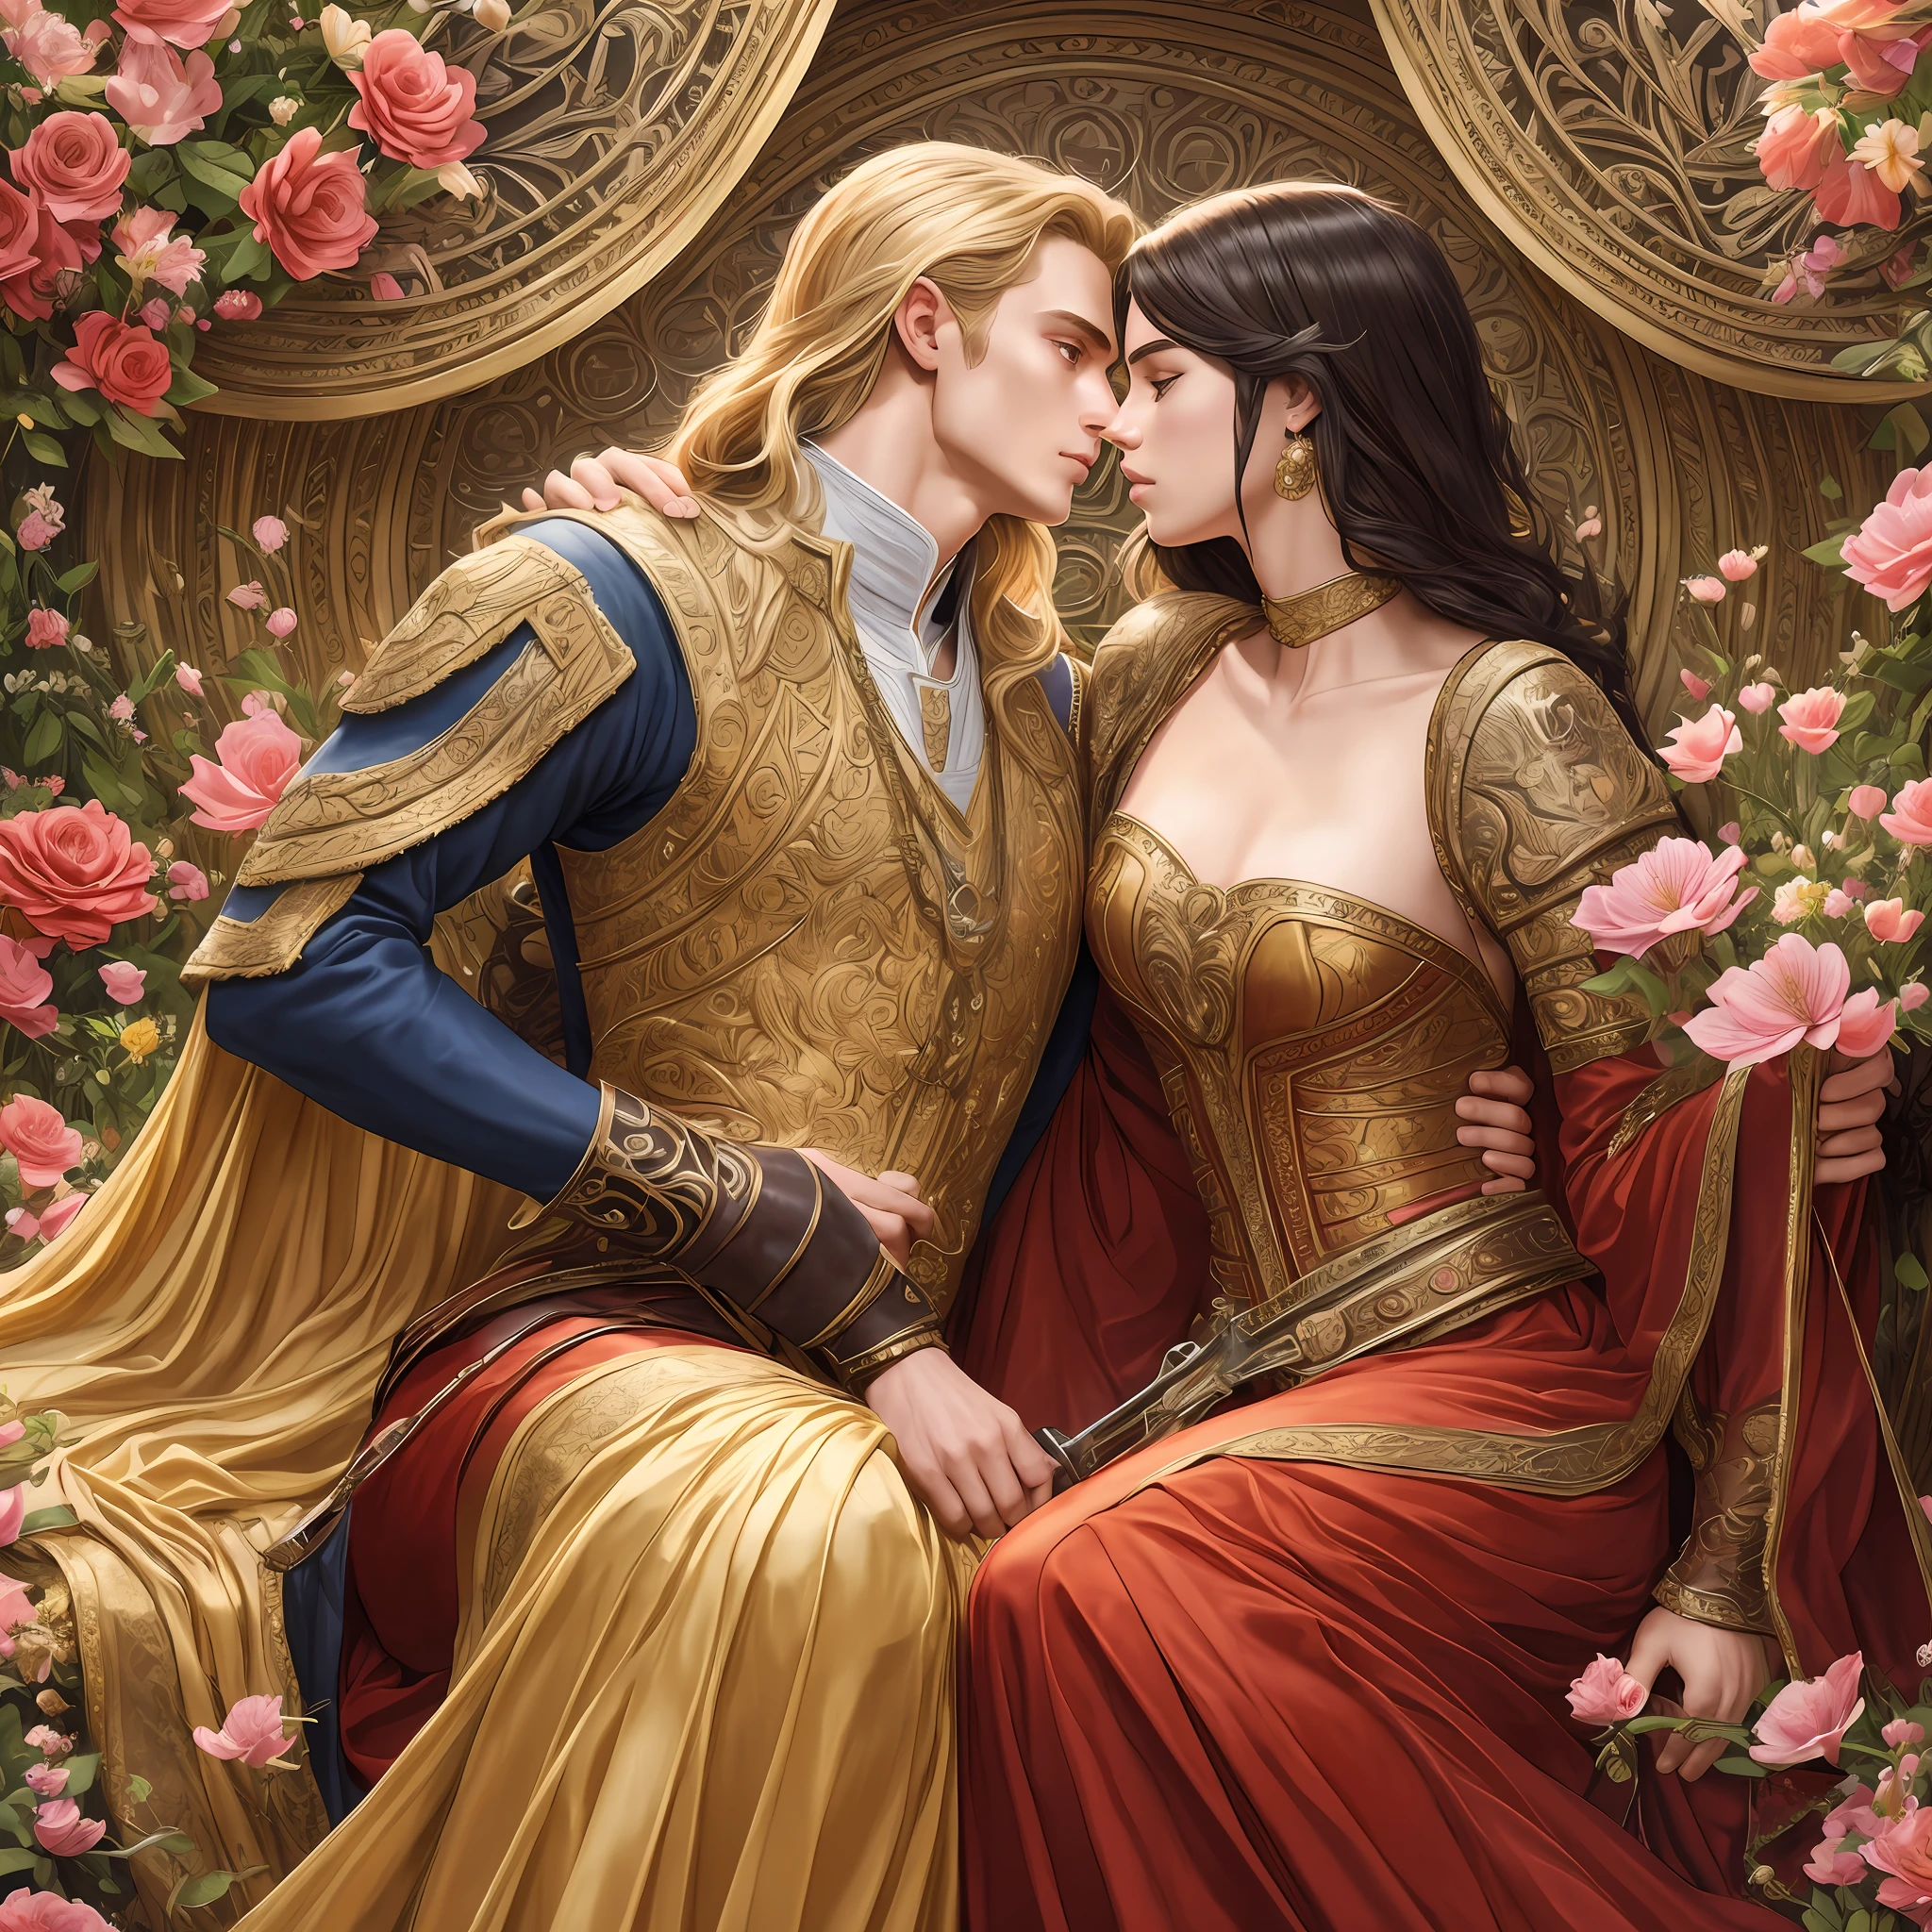 Neels Visser는 황금빛 금발 머리를 가진 왕자입니다., 중세시대 군복을 입고 평민 릴리 콜린스와 사랑에 빠진다., 검은 곱슬머리에 심플한 빨간 드레스를 입은 사람, 두 사람은 아주 다정하게 키스를 했어, 자세한 내용이 포함된 로맨스 책 표지 그림, 꽃으로 가득한 부드럽고 밝은 배경,  모델 촬영 스타일, (매우 상세한 CG 8k 벽지), 세계에서 가장 아름다운 예술 작품의 전신 사진, 전문적인 장엄한 유화, 그렉 힐데브란트(Greg Hildebrandt)의 예술, 리우 인용, 스테판 세직, 삼양, 아이쿠트 아이독두, 저스틴 제라드, 알폰스 많이, 아트거름, WLOP와 그렉 루트코스키(Greg Rutkowski)